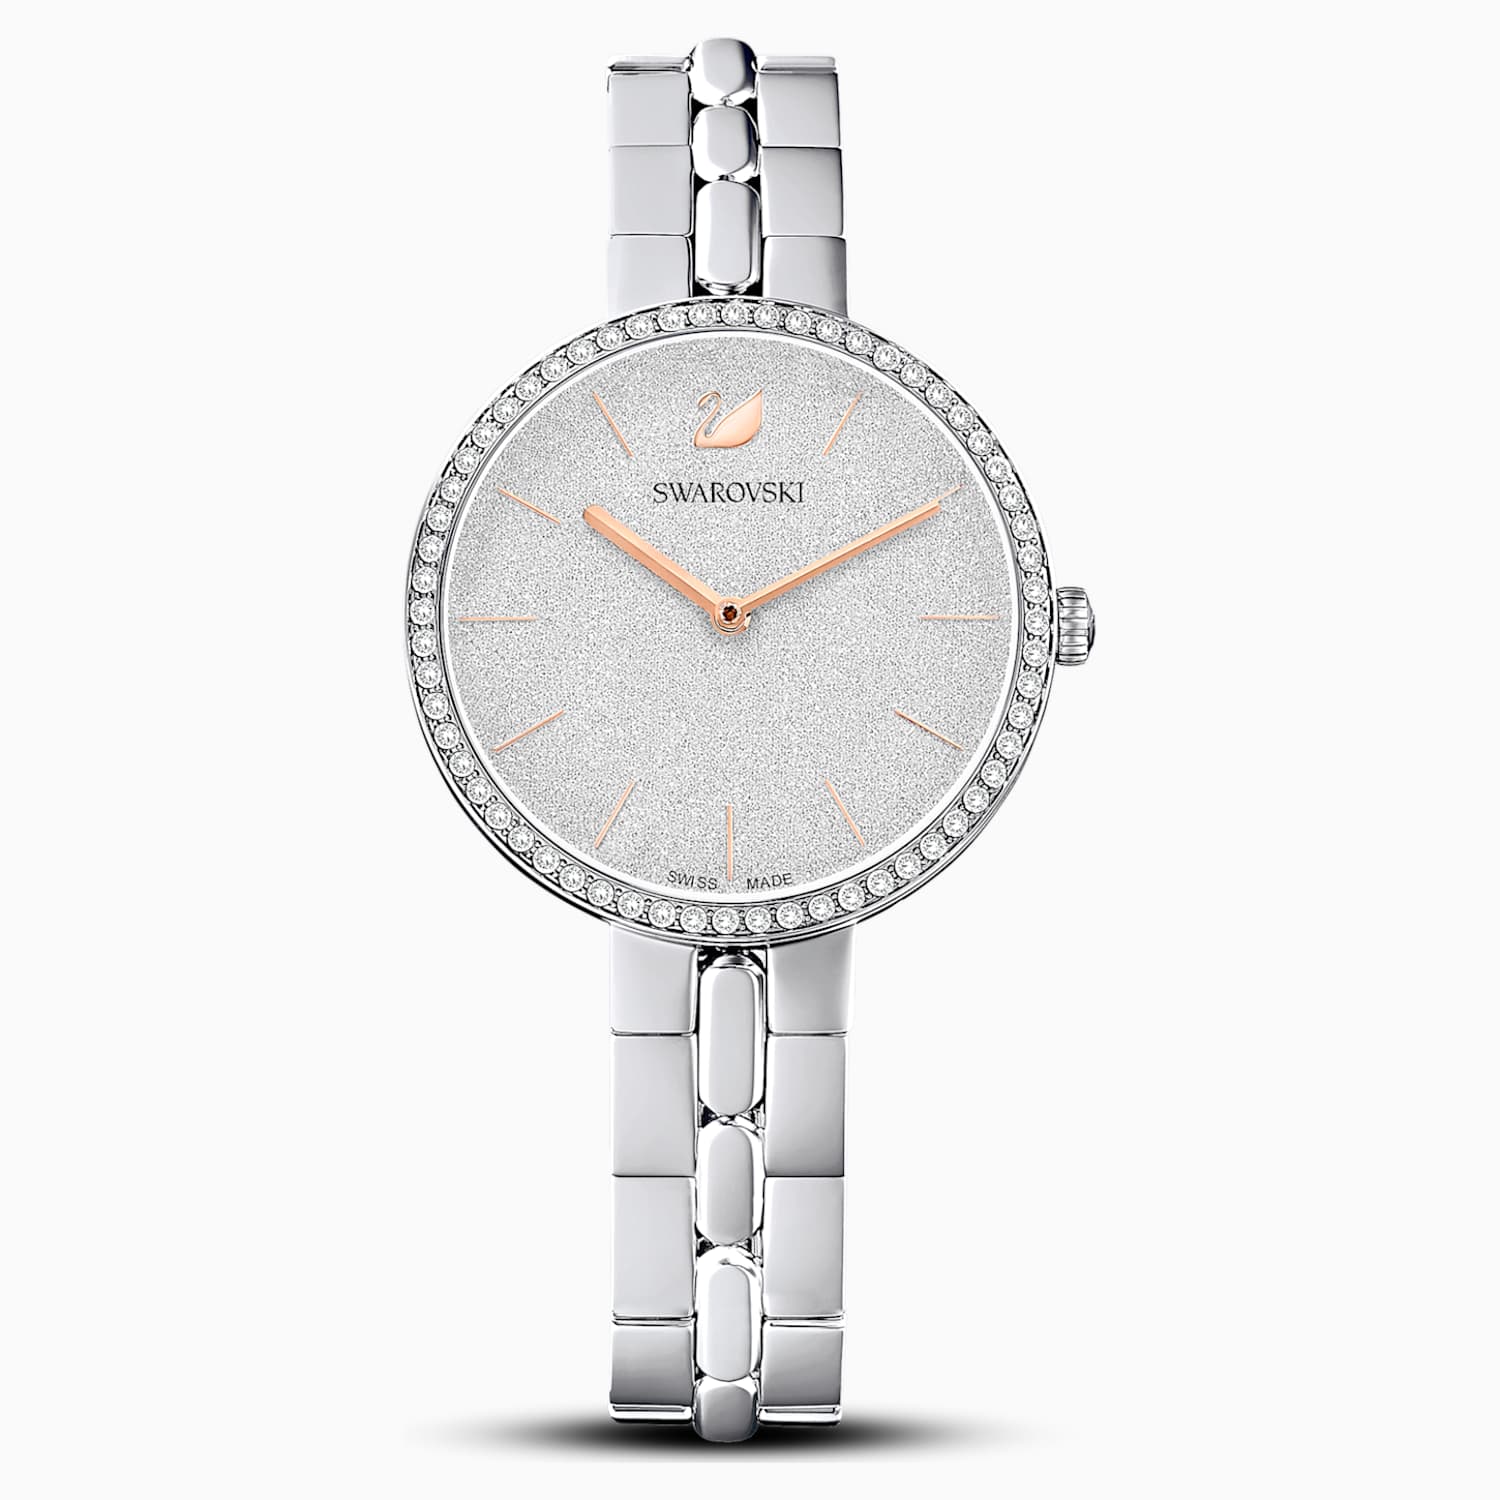 Noord inch Compliment Cosmopolitan-horloge, Metalen armband, Wit, Roestvrij staal | Swarovski.com